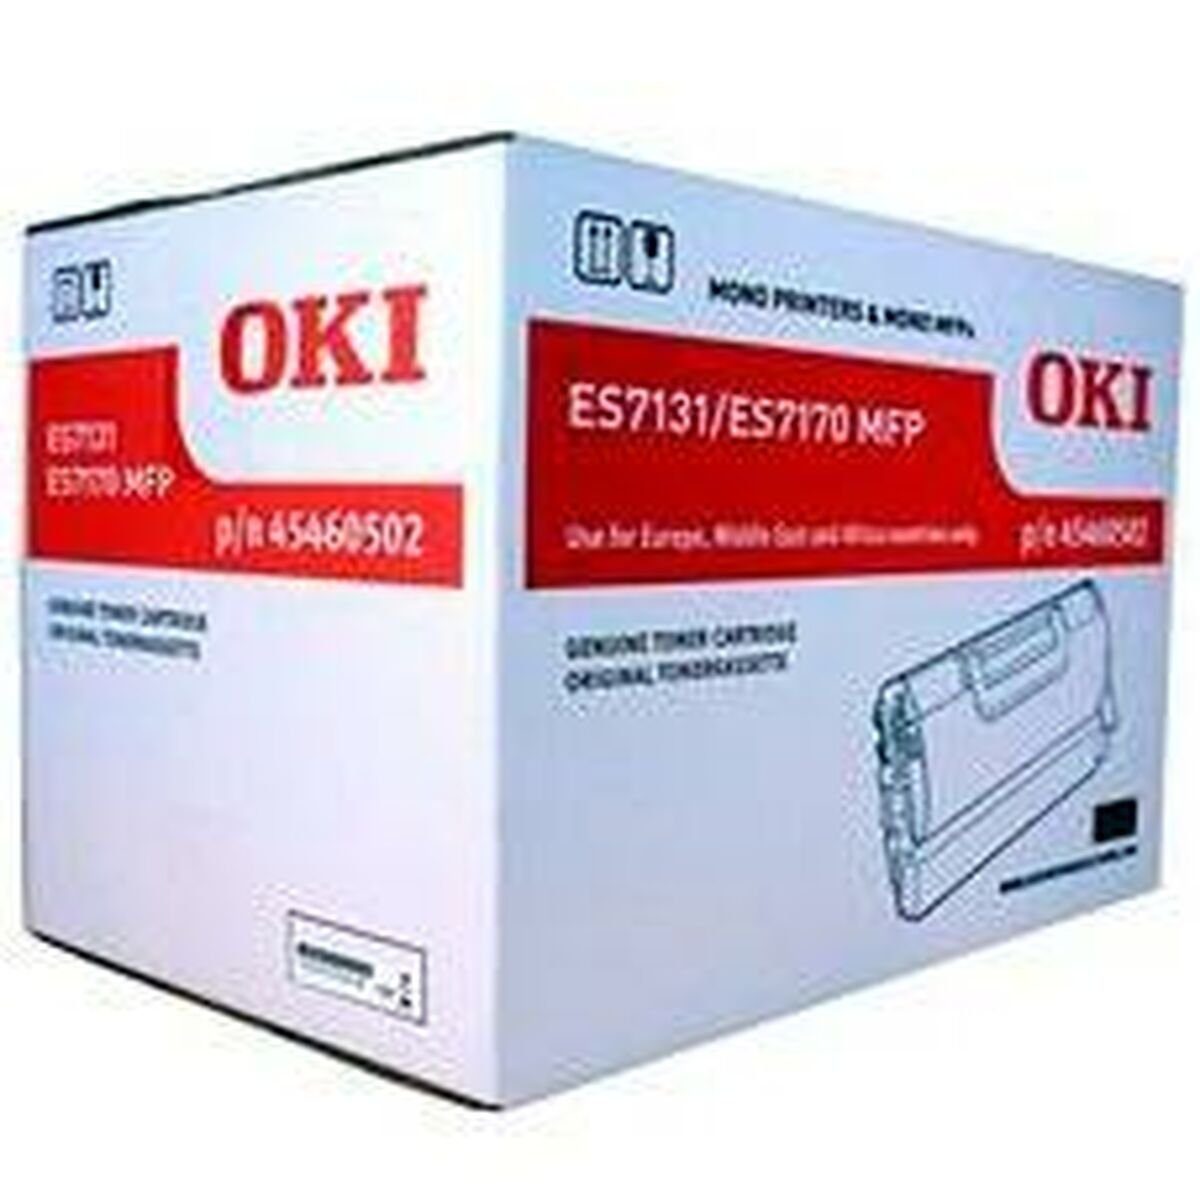 OKI Laserdrucker Toner Schwarz 45460502 OKI Tintenpatrone